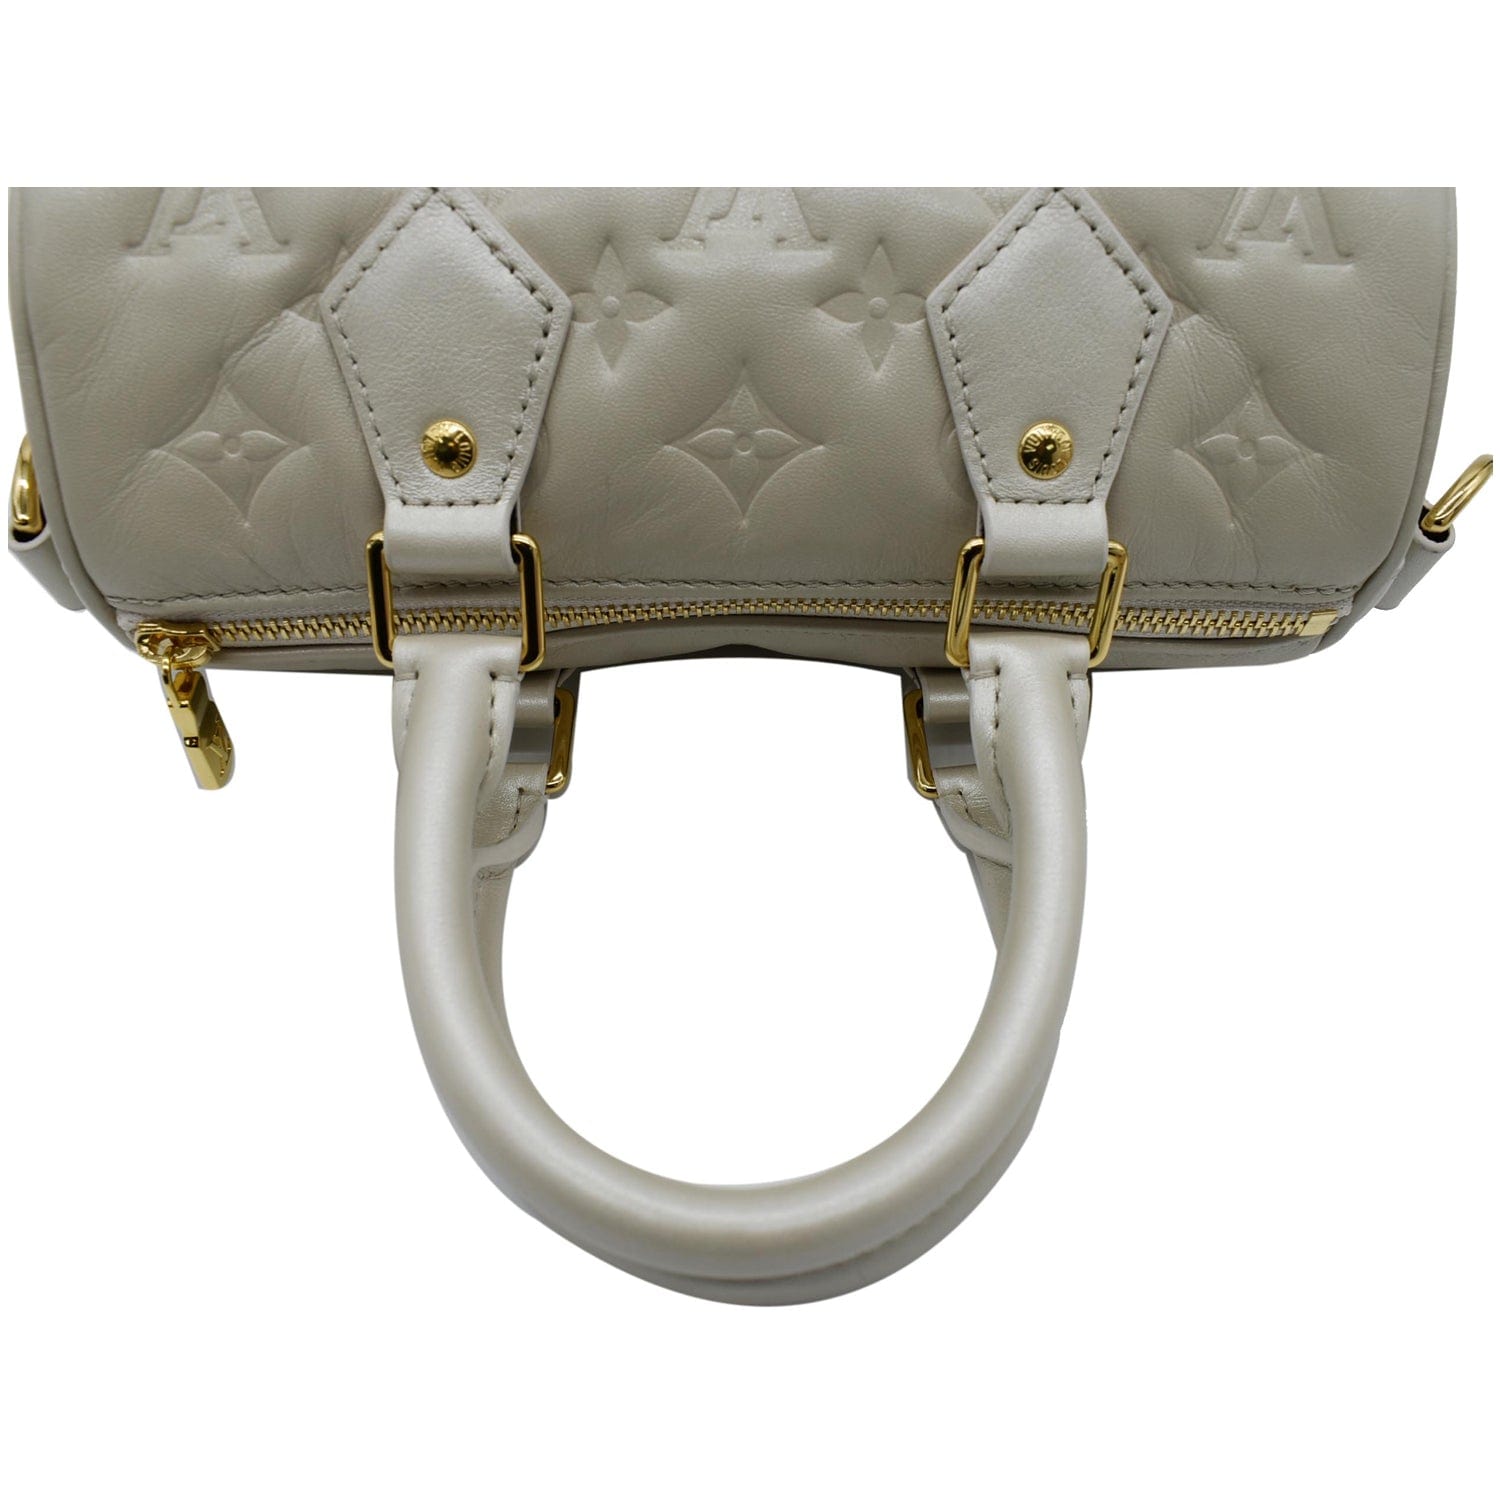 Louis Vuitton Speedy Bandouliere 22 Black Handbag Gold Chain & Hardware